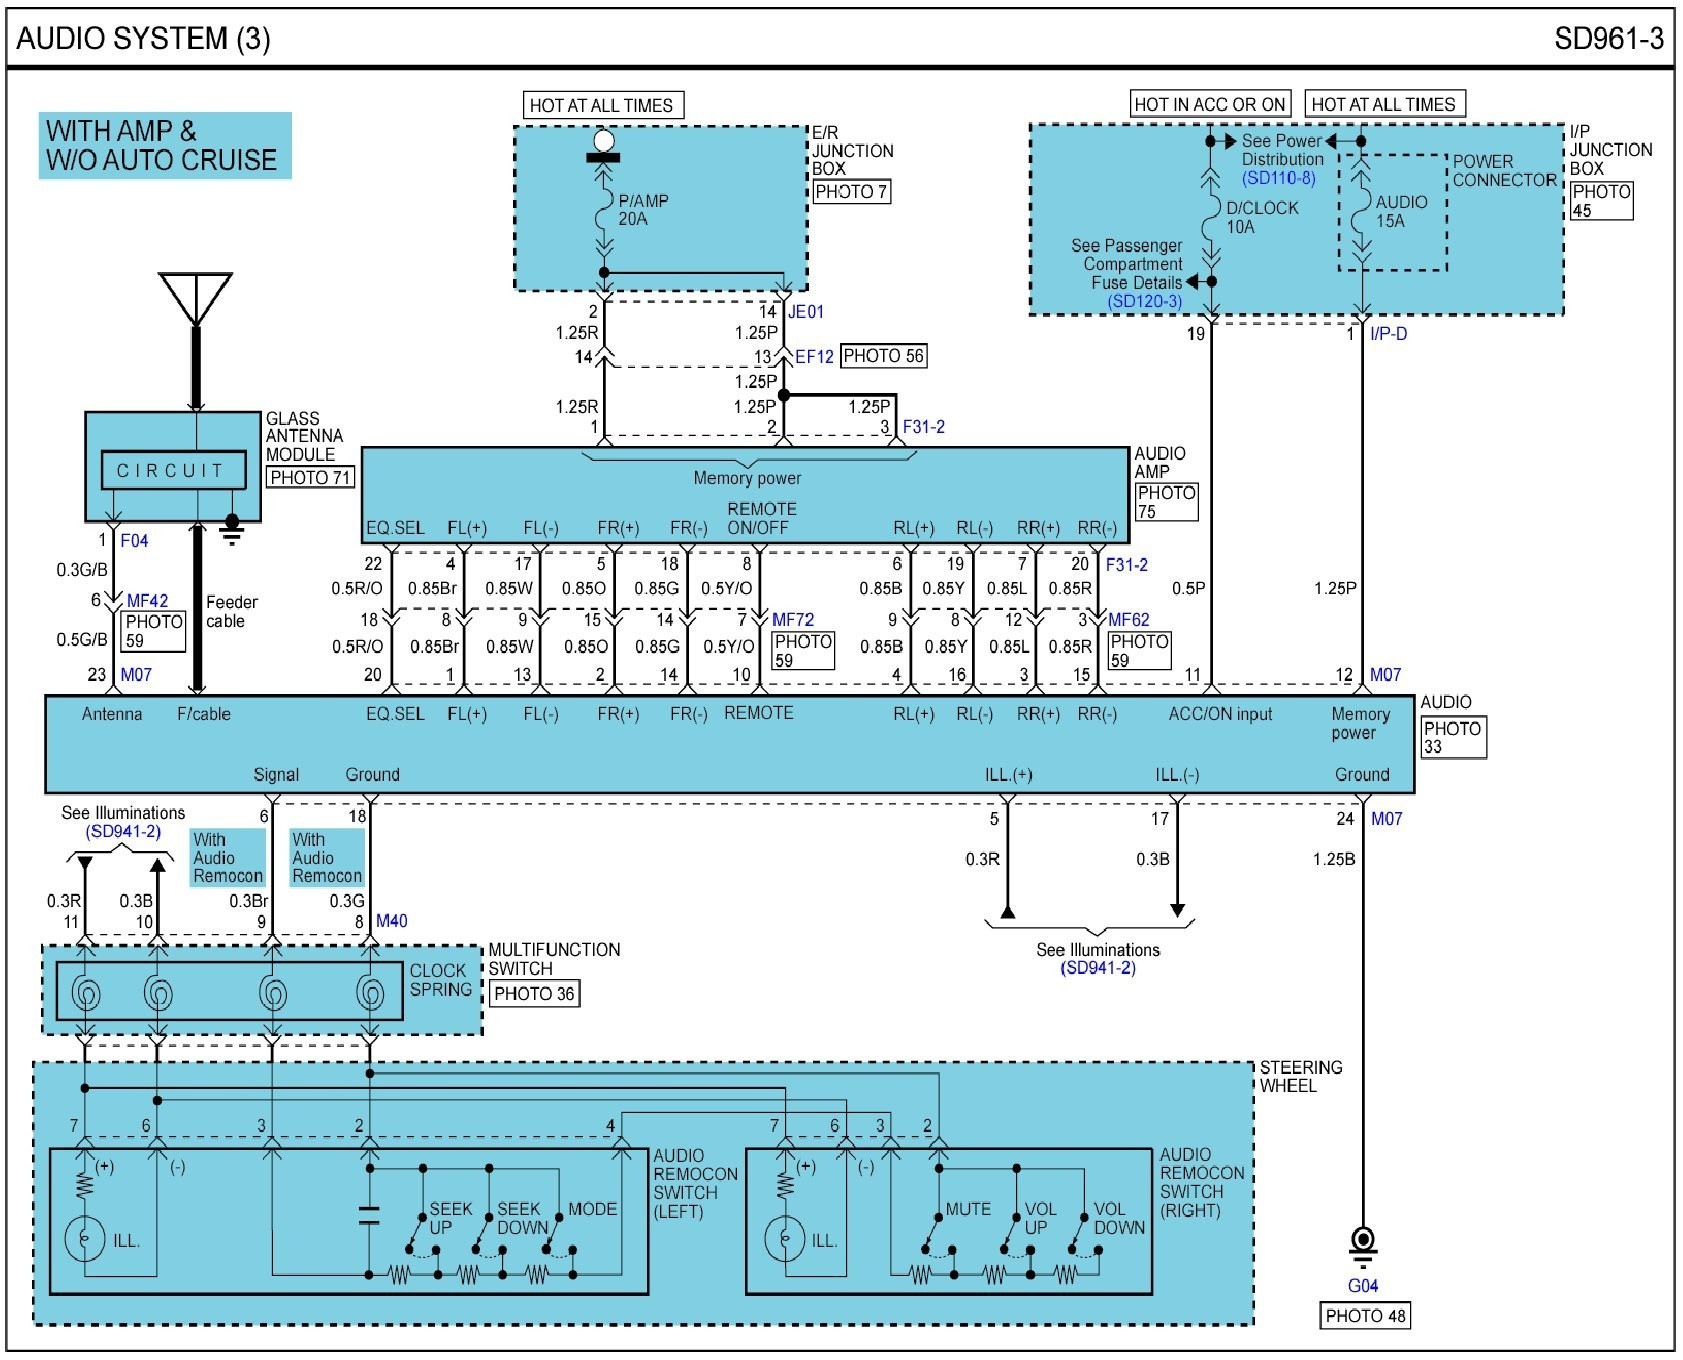 2004 Kia Rio Engine Diagram Kia Diagram Wirings Layout Wiring Diagrams • Of 2004 Kia Rio Engine Diagram